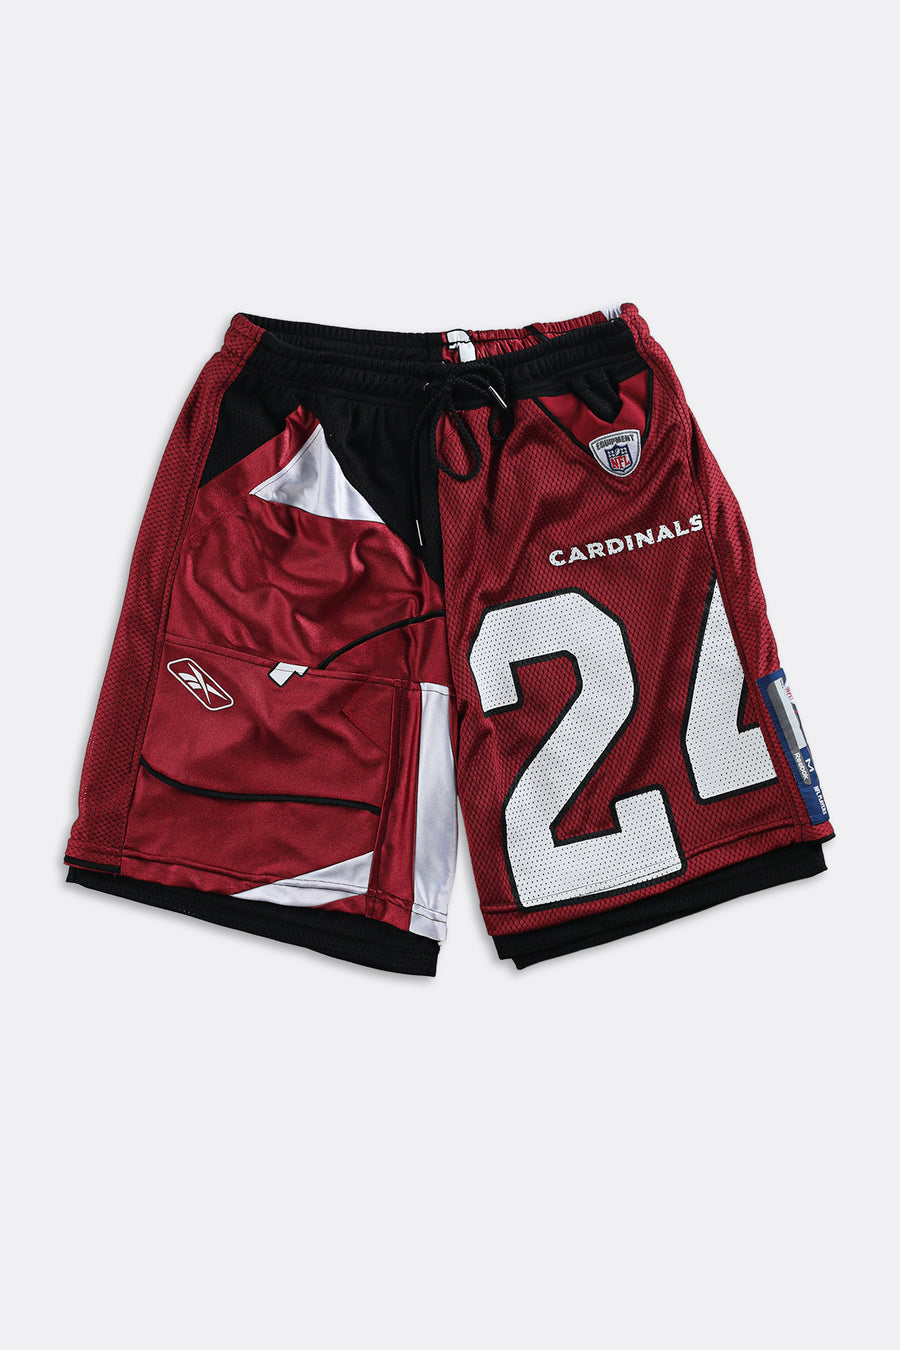 Rework Unisex Cardinals NFL Jersey Shorts - Women-M, Men-S